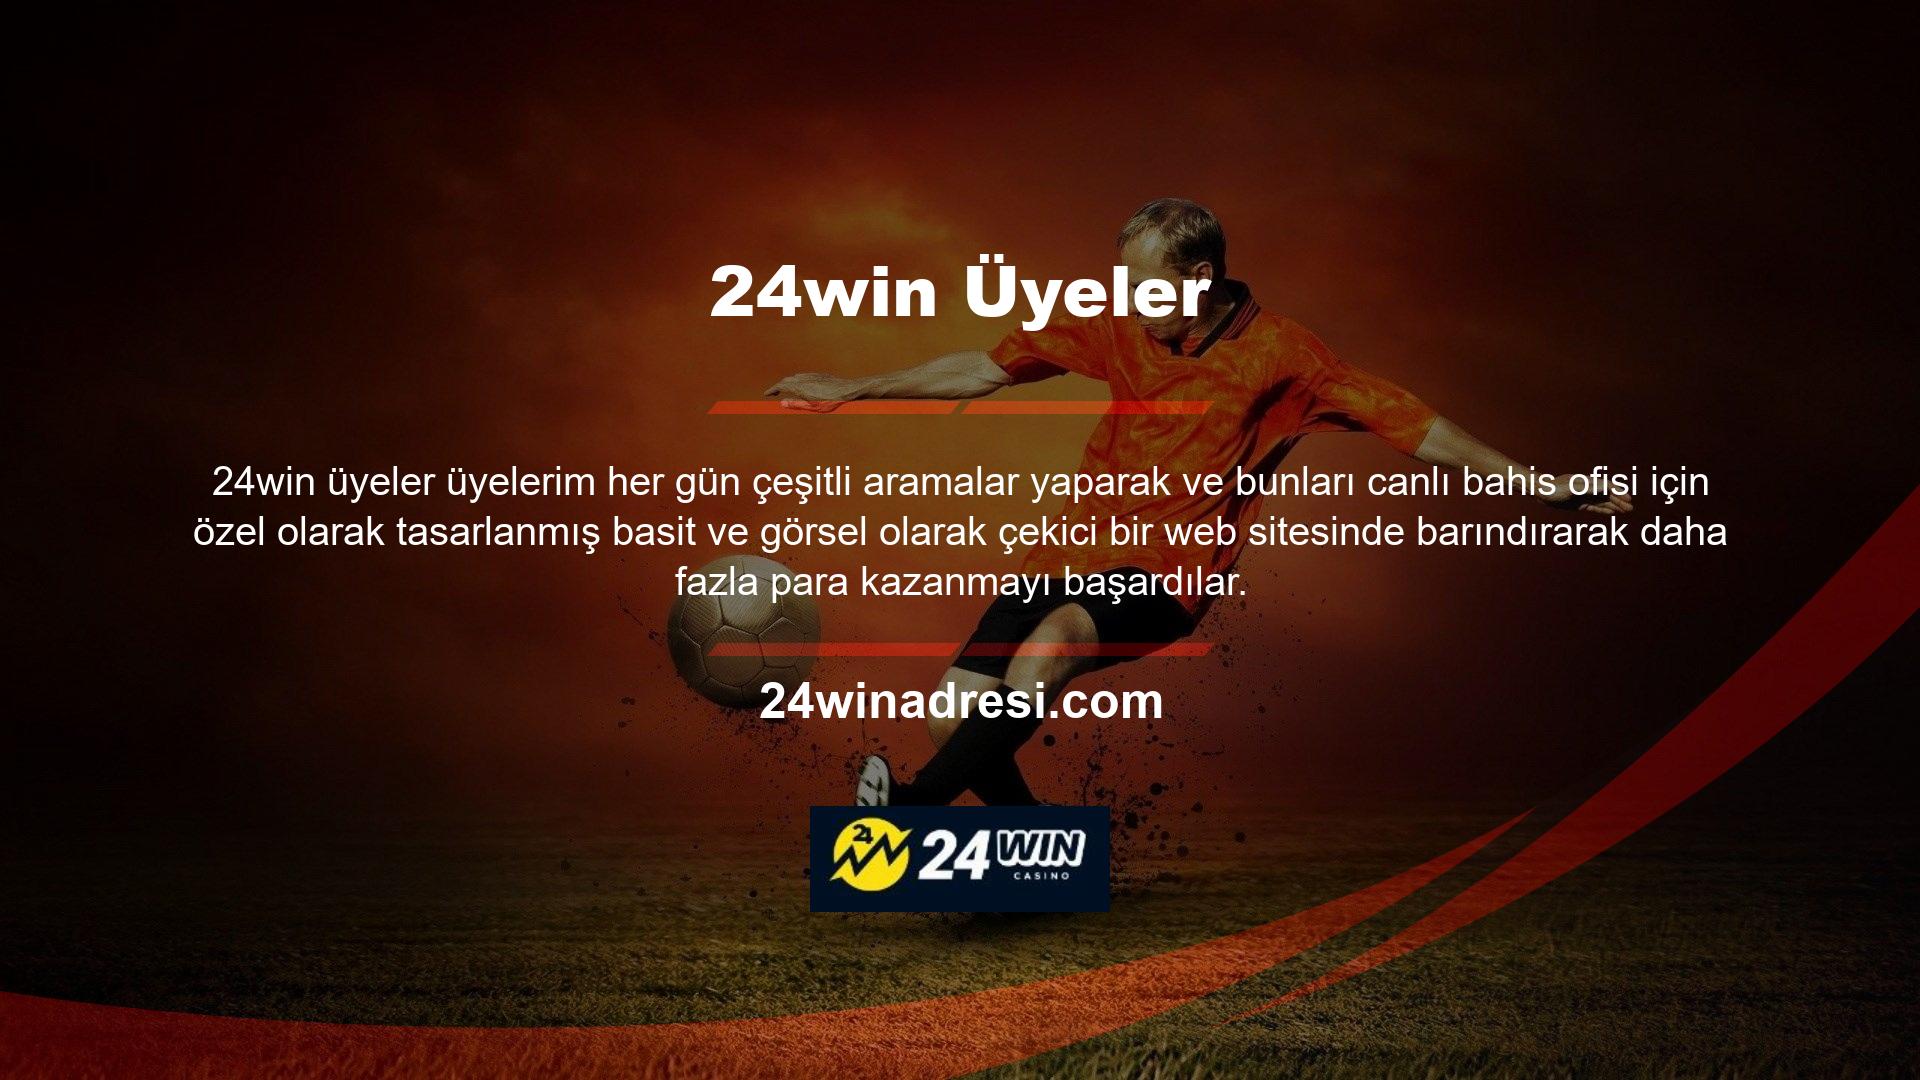 24win web sitesi ve kayıt sırasında verilen detaylar da görüntülenebilir